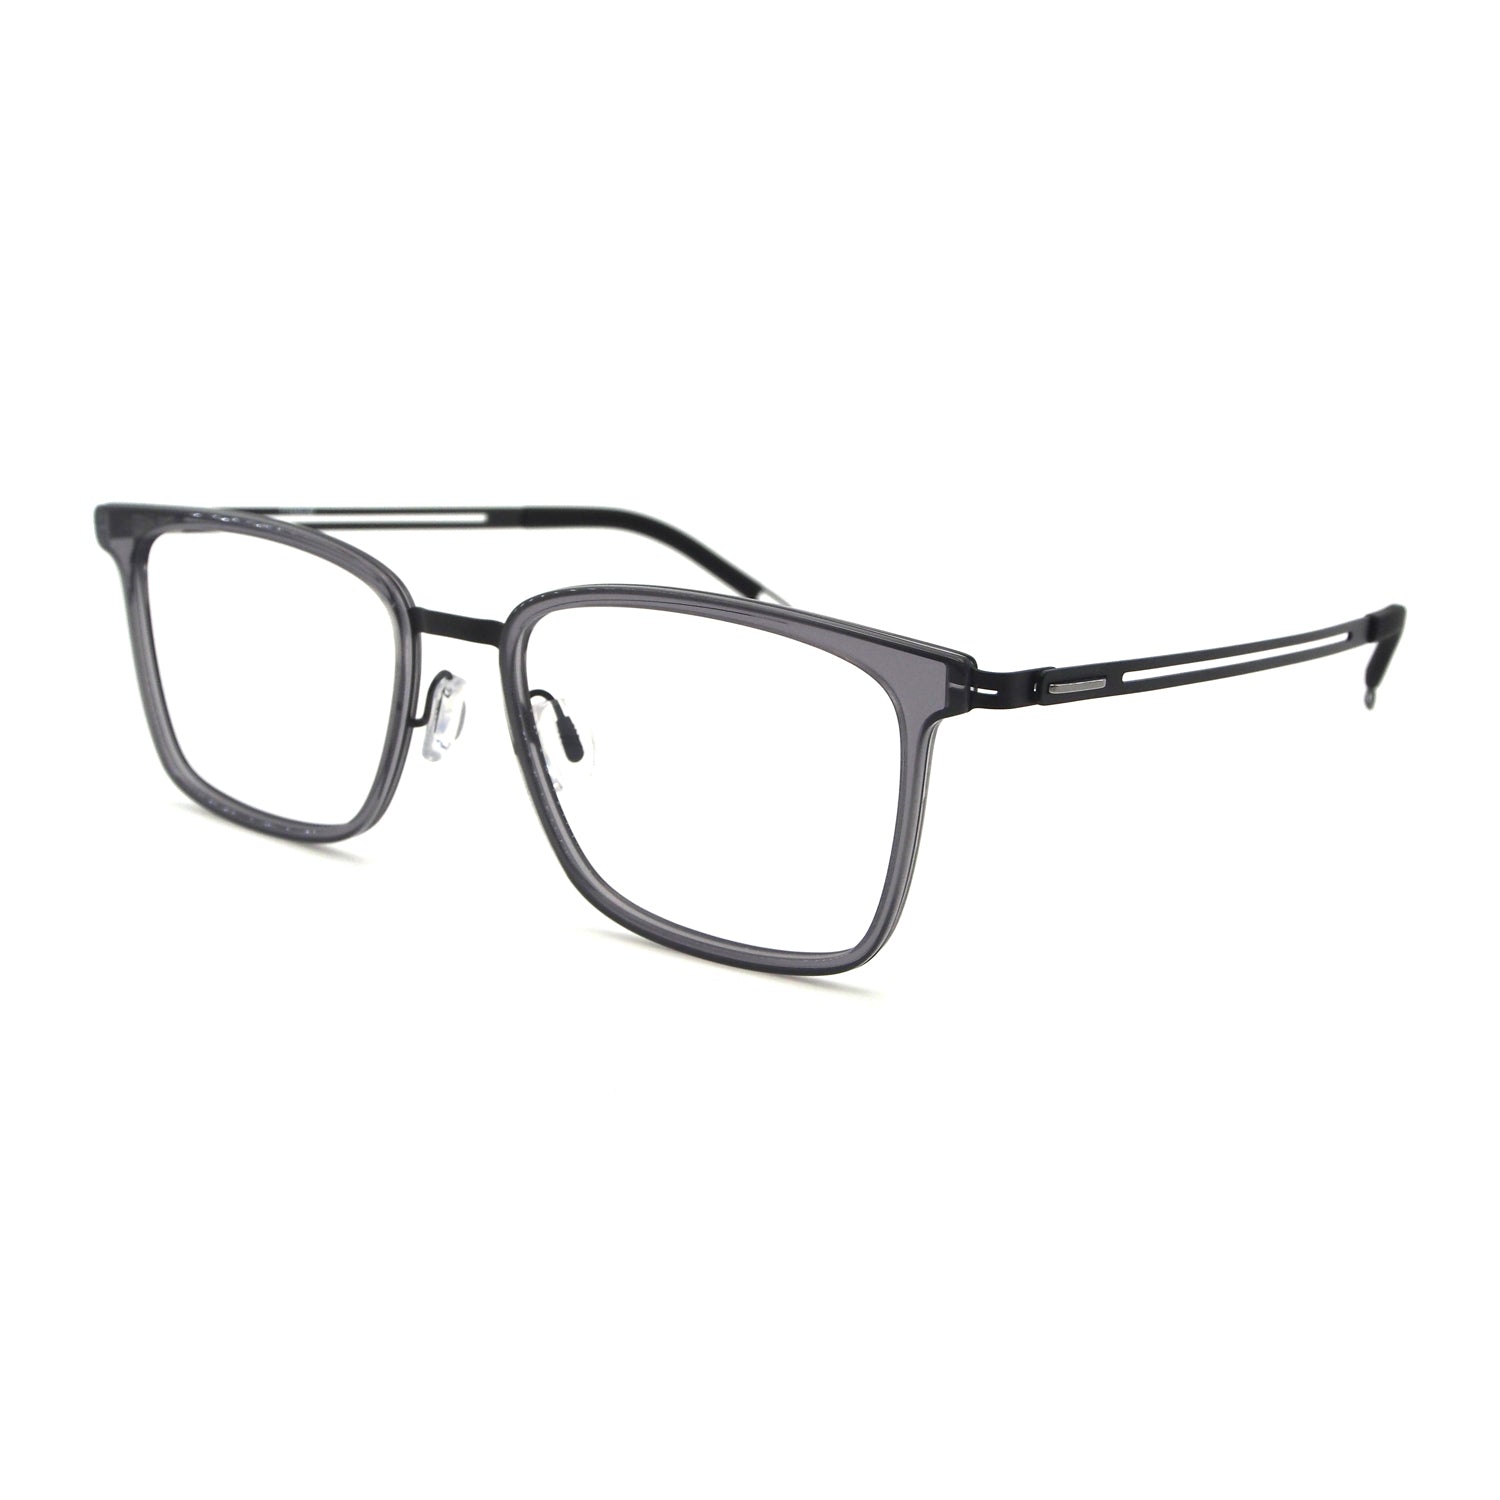 Paloma in Crystal Grey Eyeglasses - sightonomy